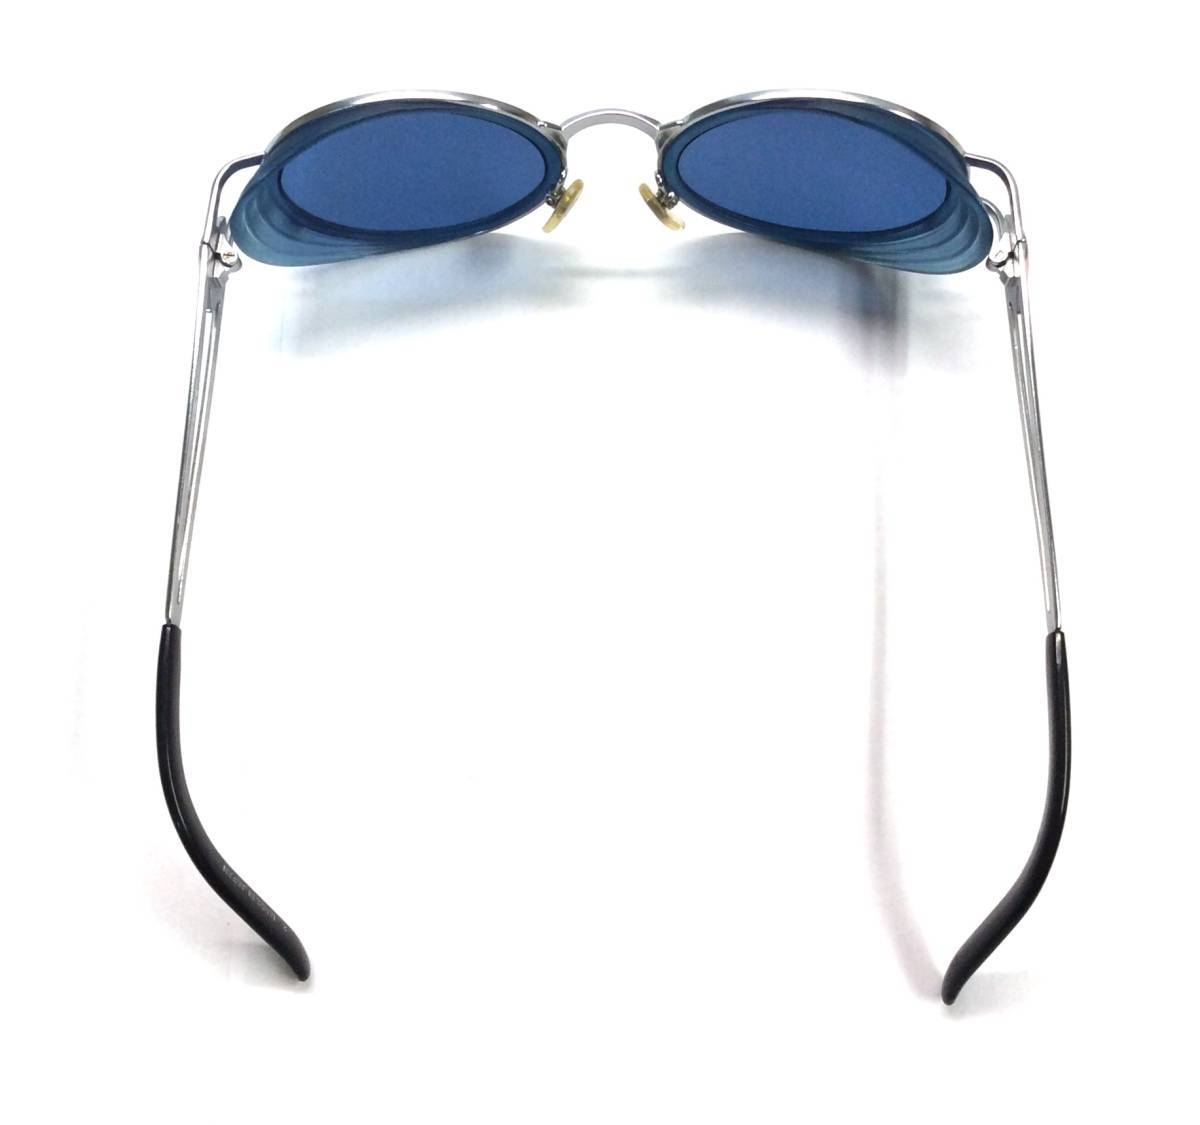 ジャンポールゴルチェ JEAN PAUL GAULTIER サングラス フレーム メガネ 眼鏡 シルバー×ブルー×ブラック系 日本製 58-6202 (ma)_画像4